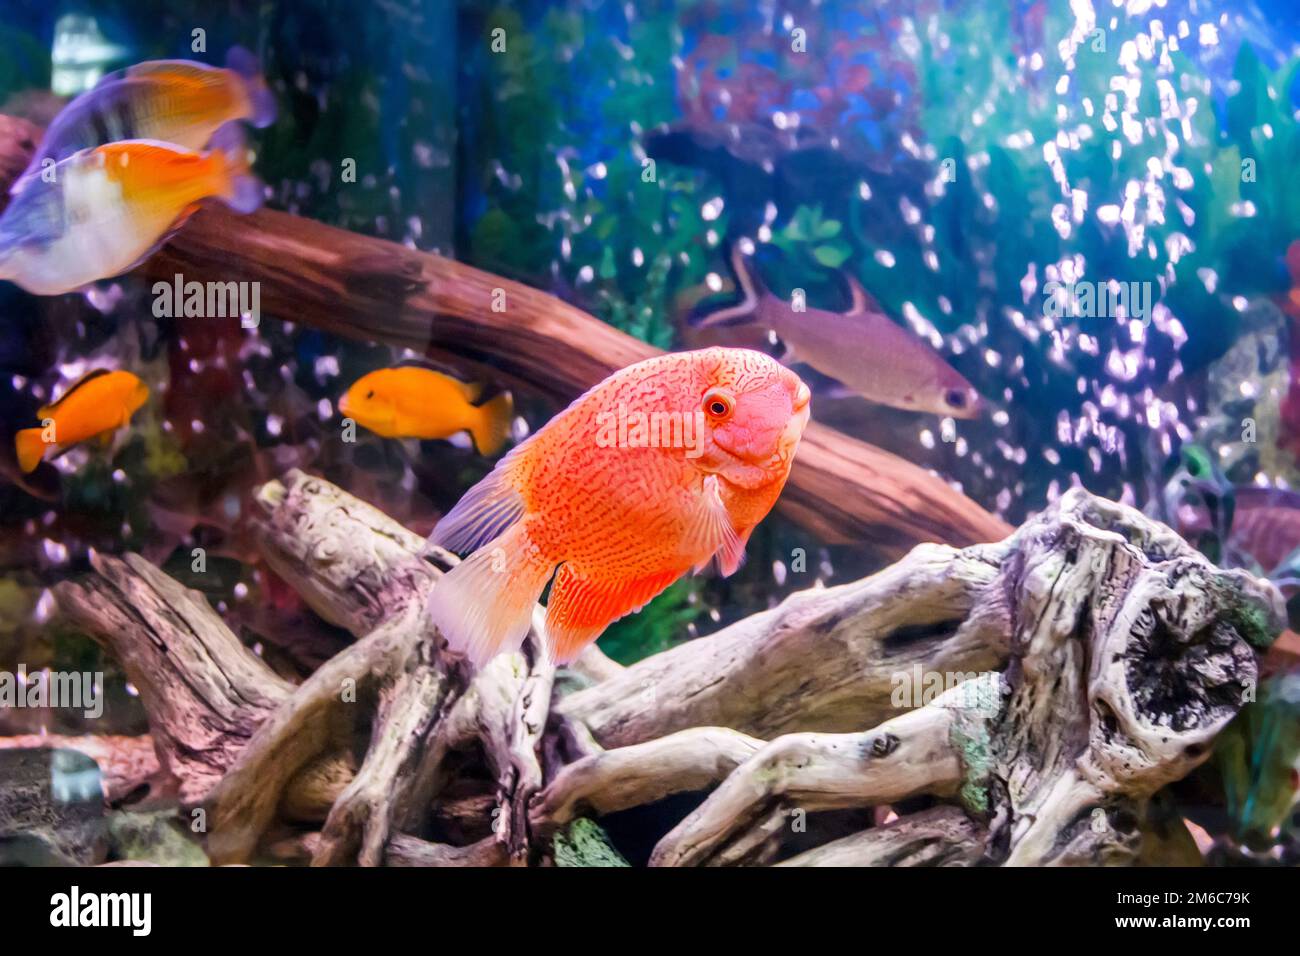 Cichlasoma severum in aquarium Stock Photo